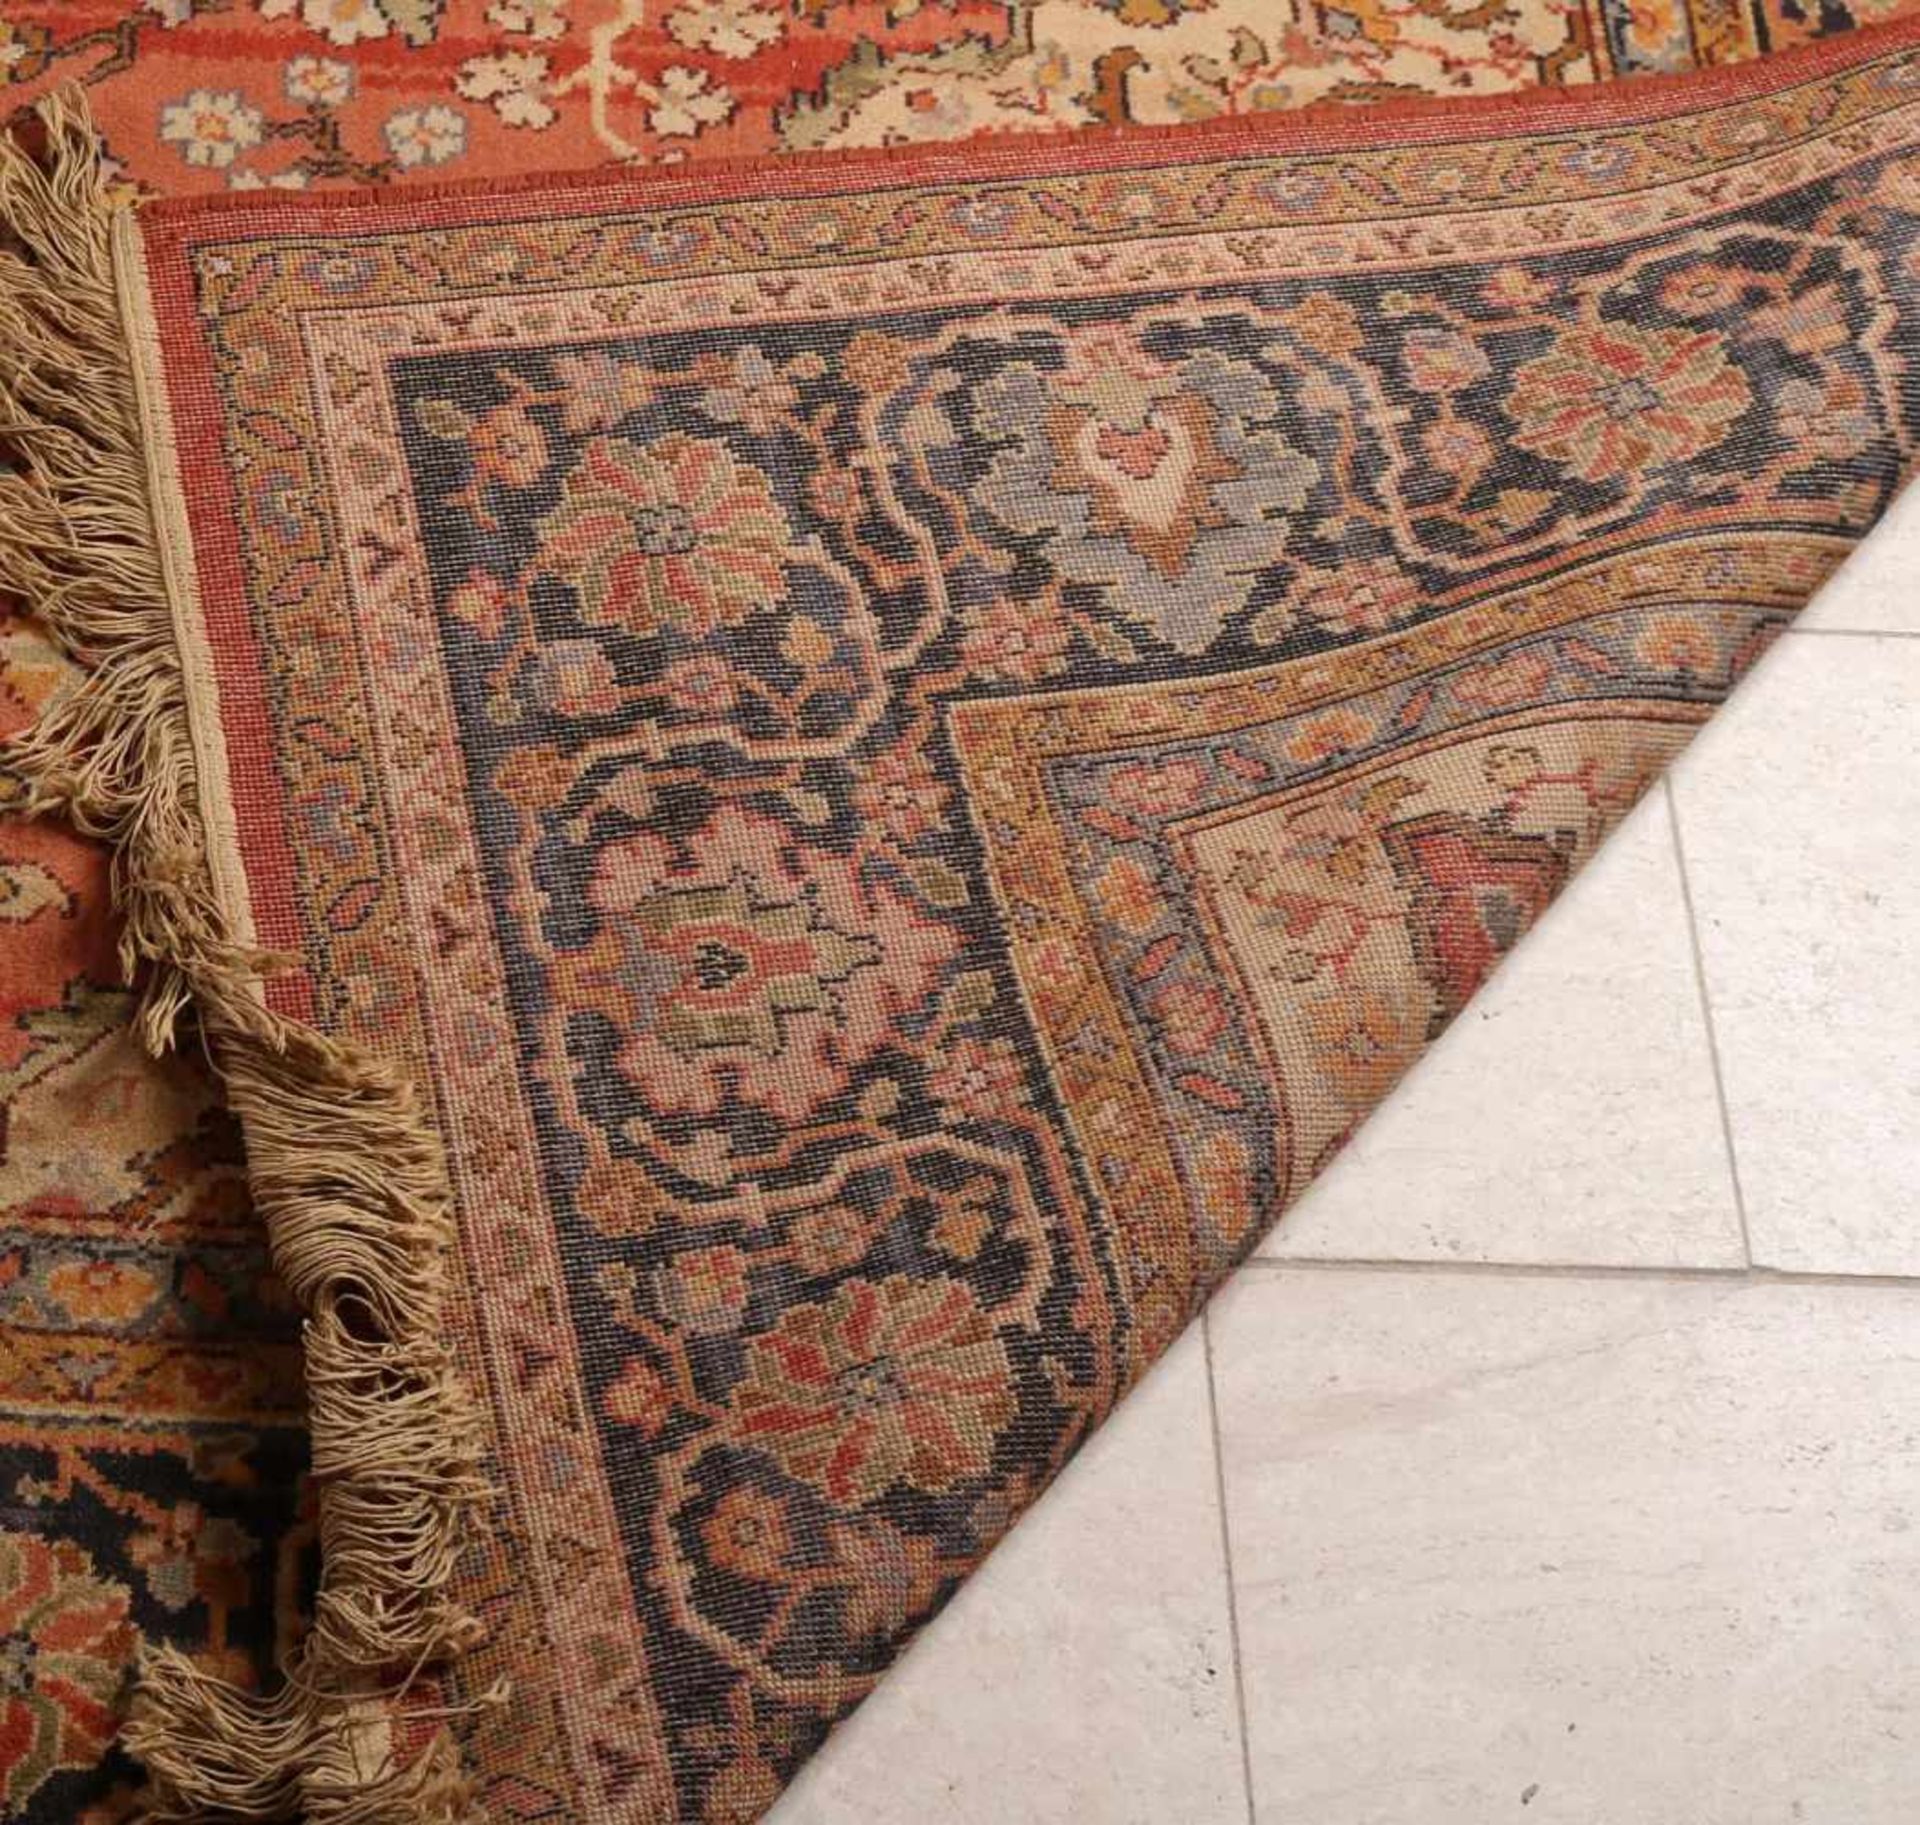 Großer handgeknüpfter Teppich. Komplett mit Blumendekor dekoriert. Größe: 345 x 250 cm. In guter - Bild 3 aus 3